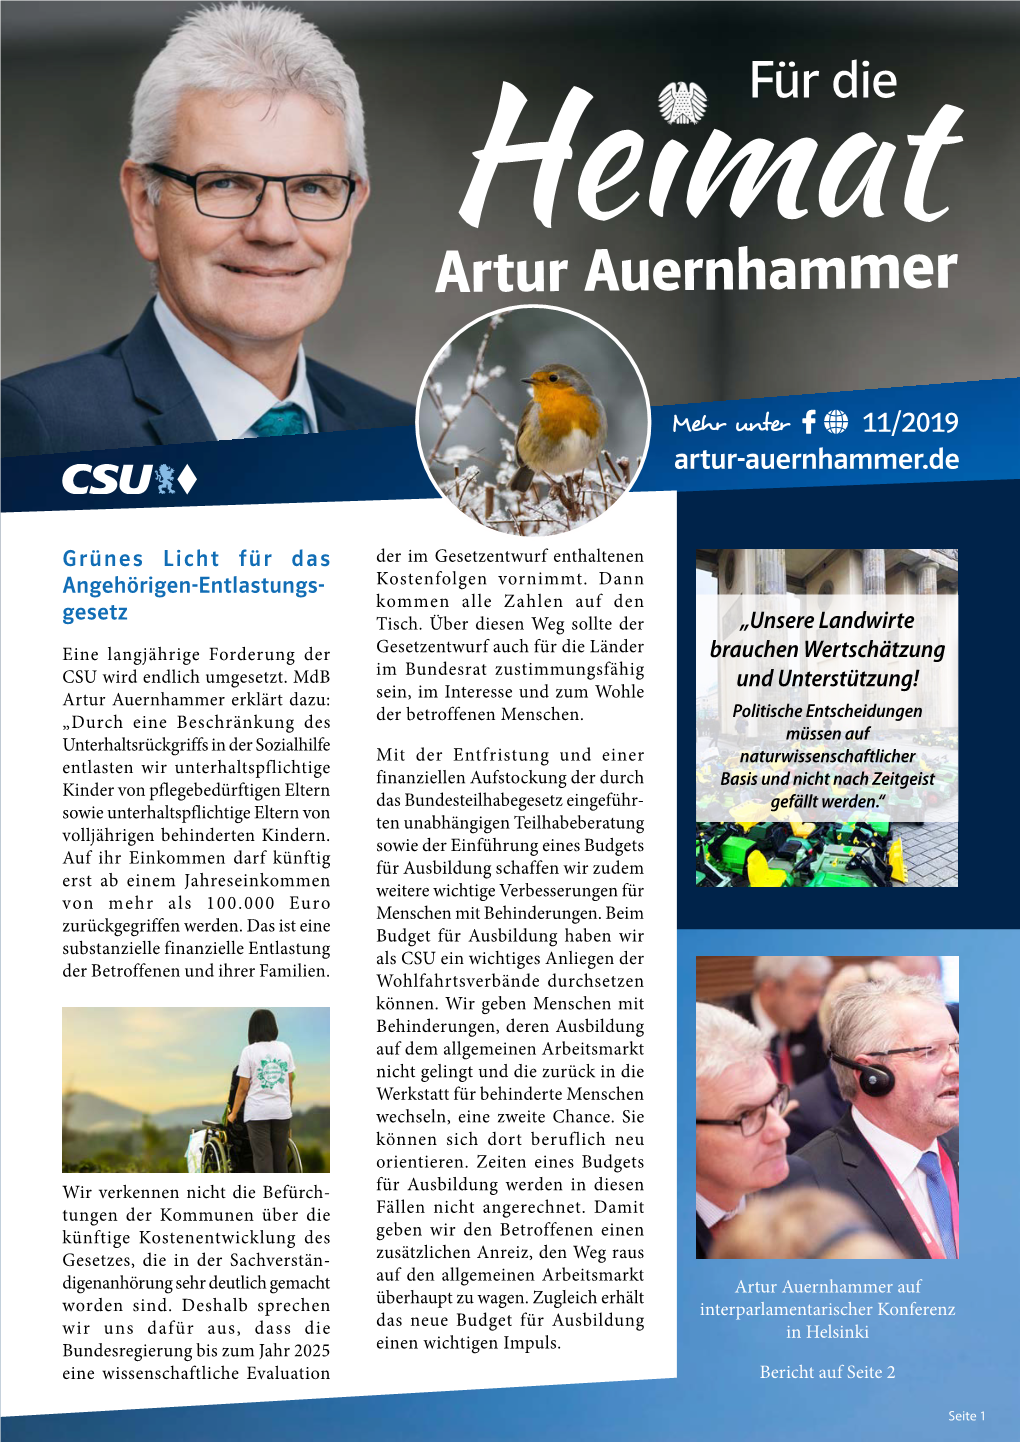 Artur Auernhammer